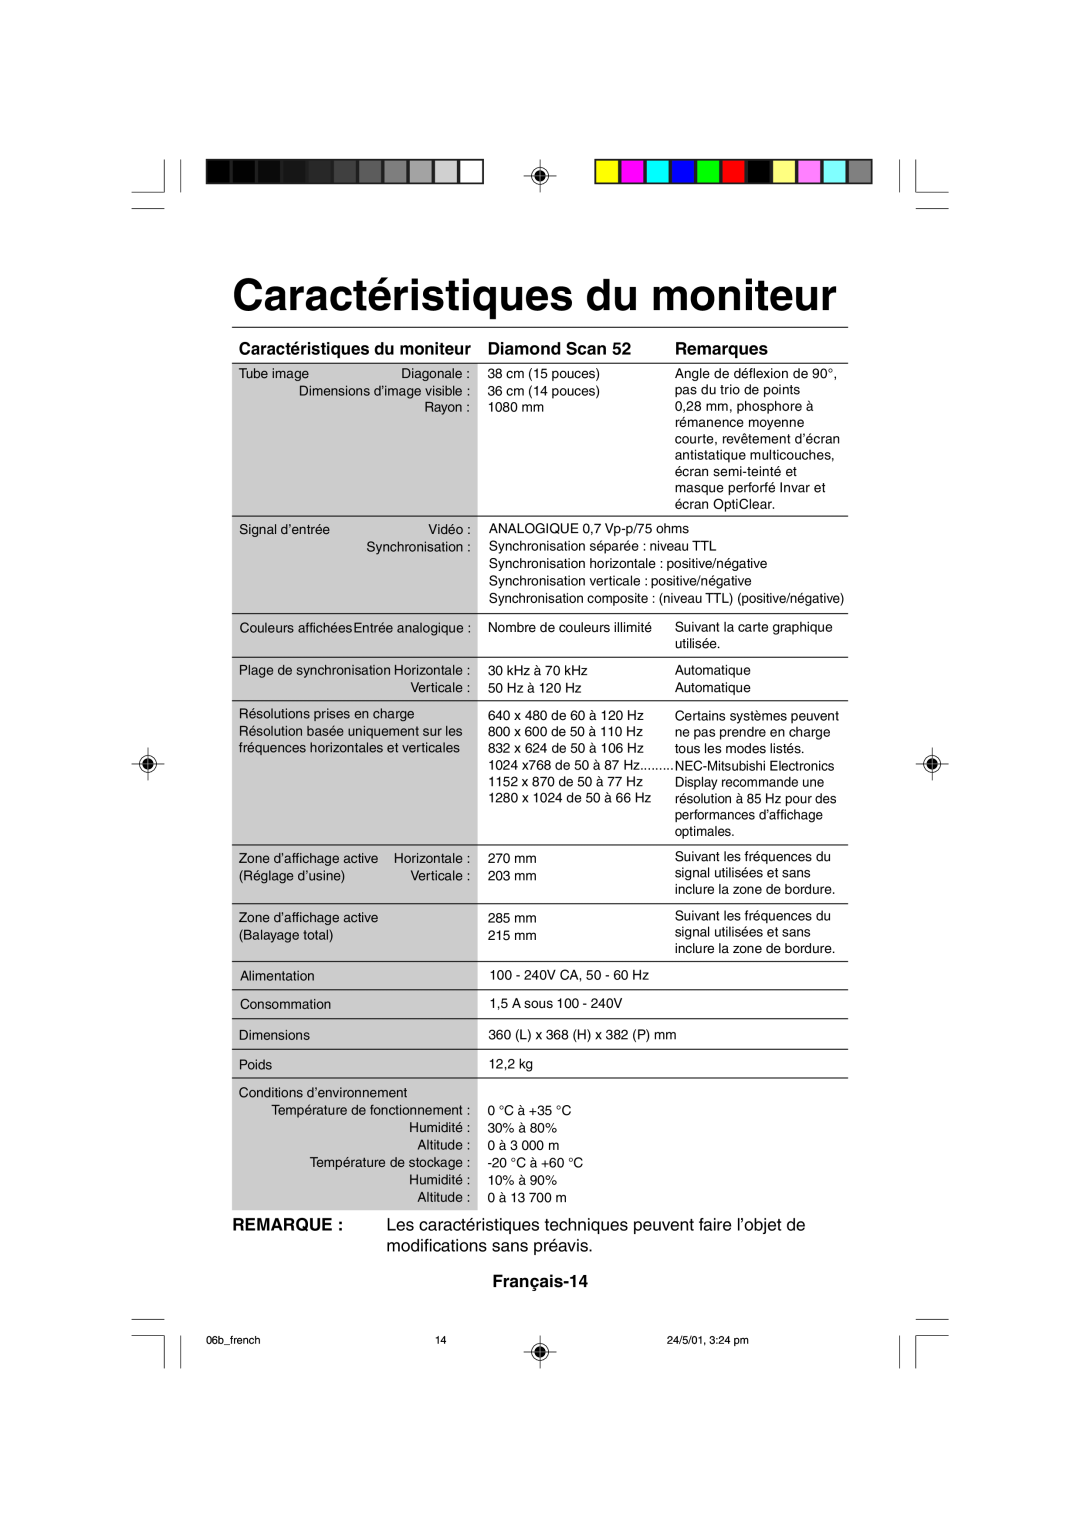 Mitsubishi Electronics M557 user manual Caractéristiques du moniteur Diamond Scan, Français-14, Remarques 